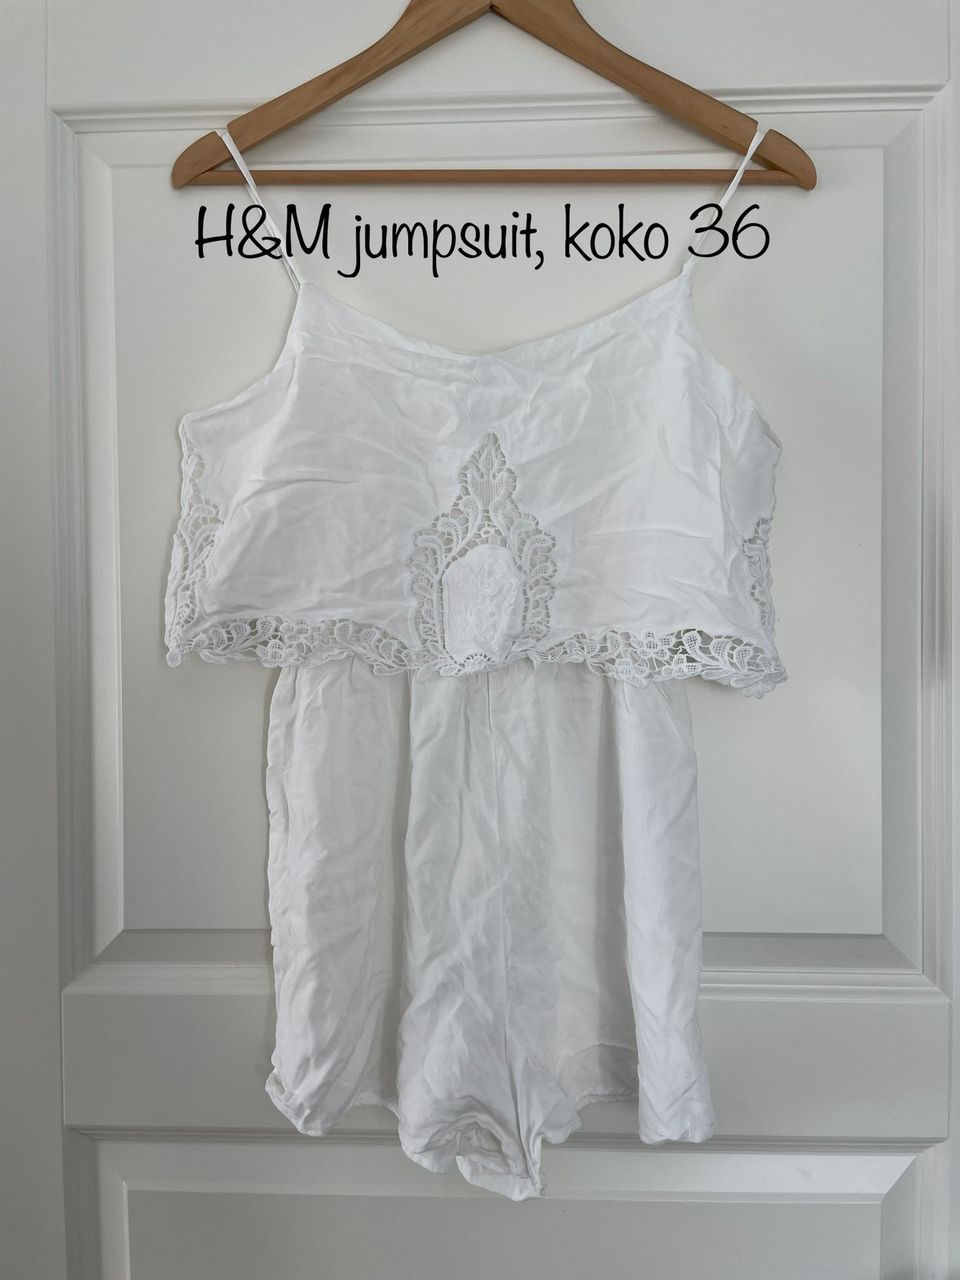 H&M siisti jumpsuit